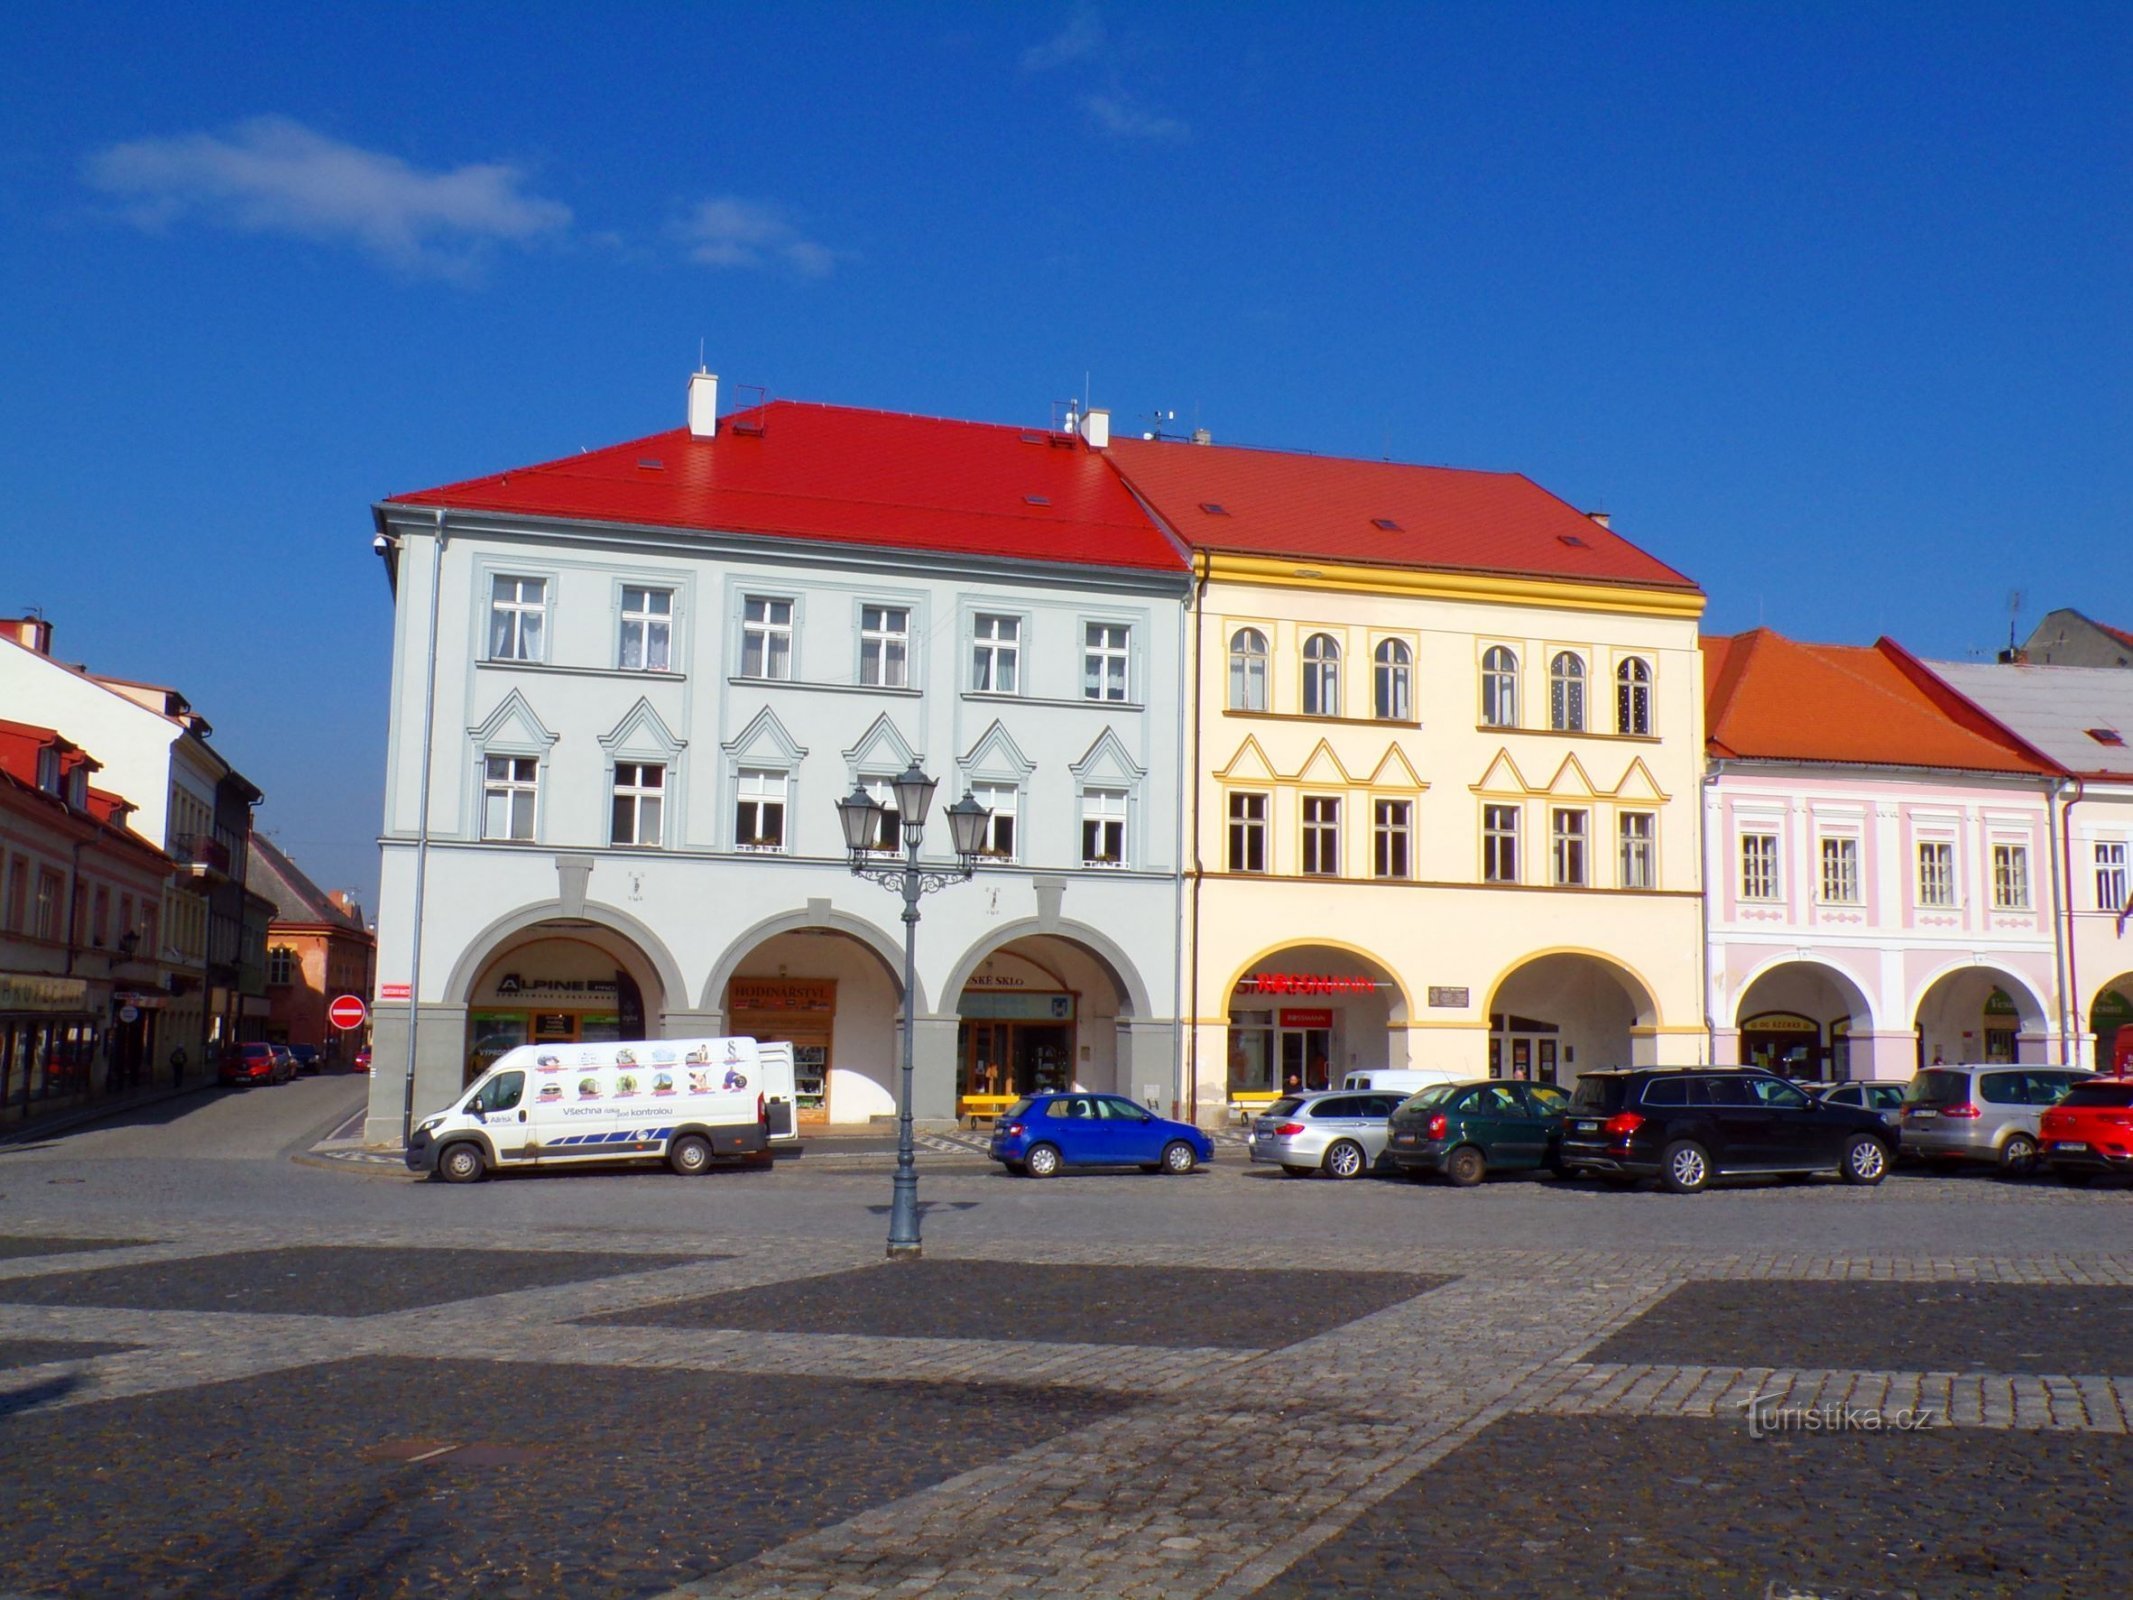 Palackého nr 73 i Valdštejnovo náměstí nr 74 (Jičín, 3.3.2022)